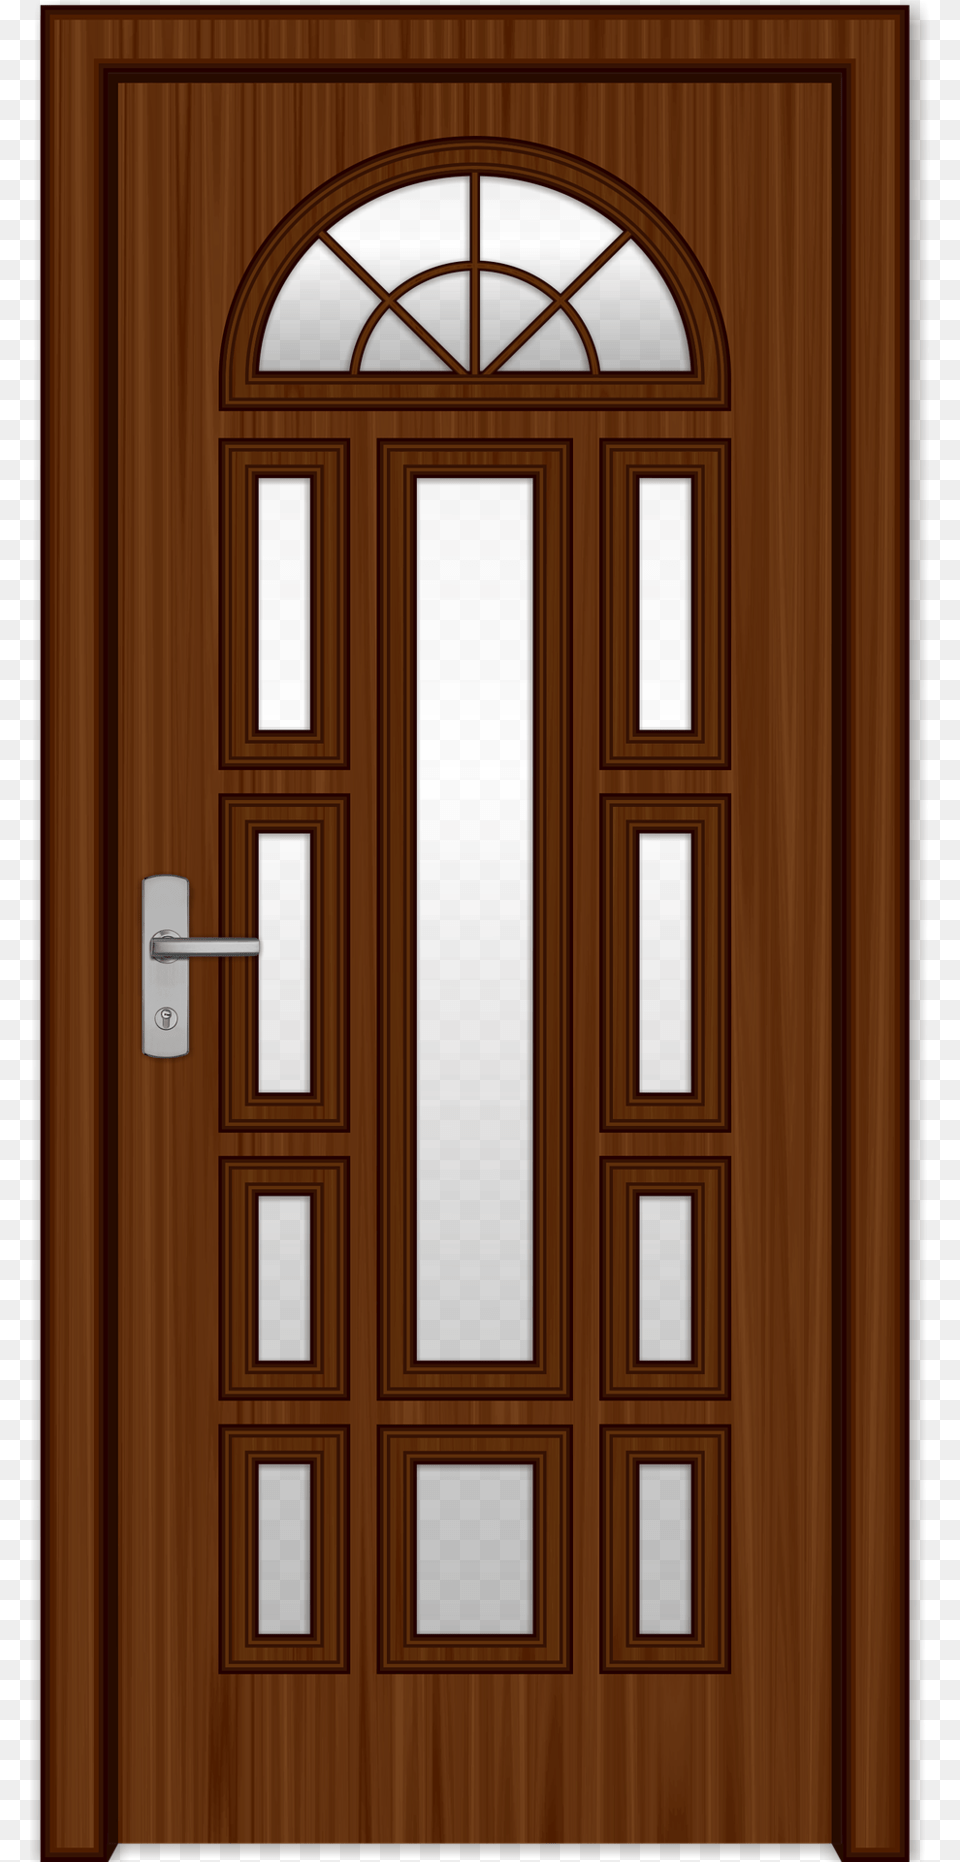 Download Wood Door Clipart Door Wood Door Wood, Architecture, Building, Housing, House Png